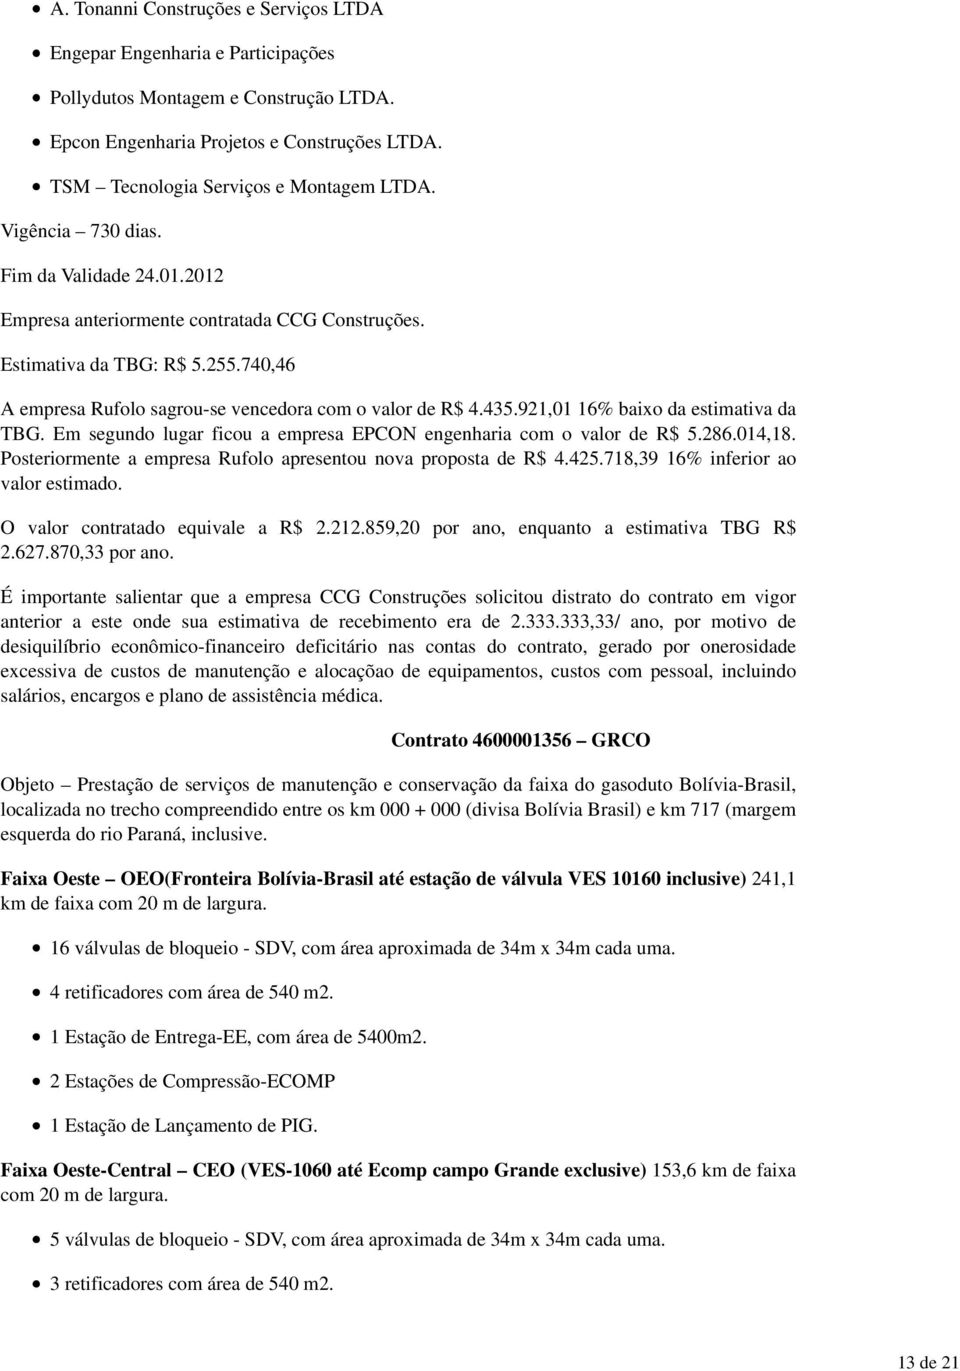 921,01 16% baixo da estimativa da TBG. Em segundo lugar ficou a empresa EPCON engenharia com o valor de R$ 5.286.014,18. Posteriormente a empresa Rufolo apresentou nova proposta de R$ 4.425.